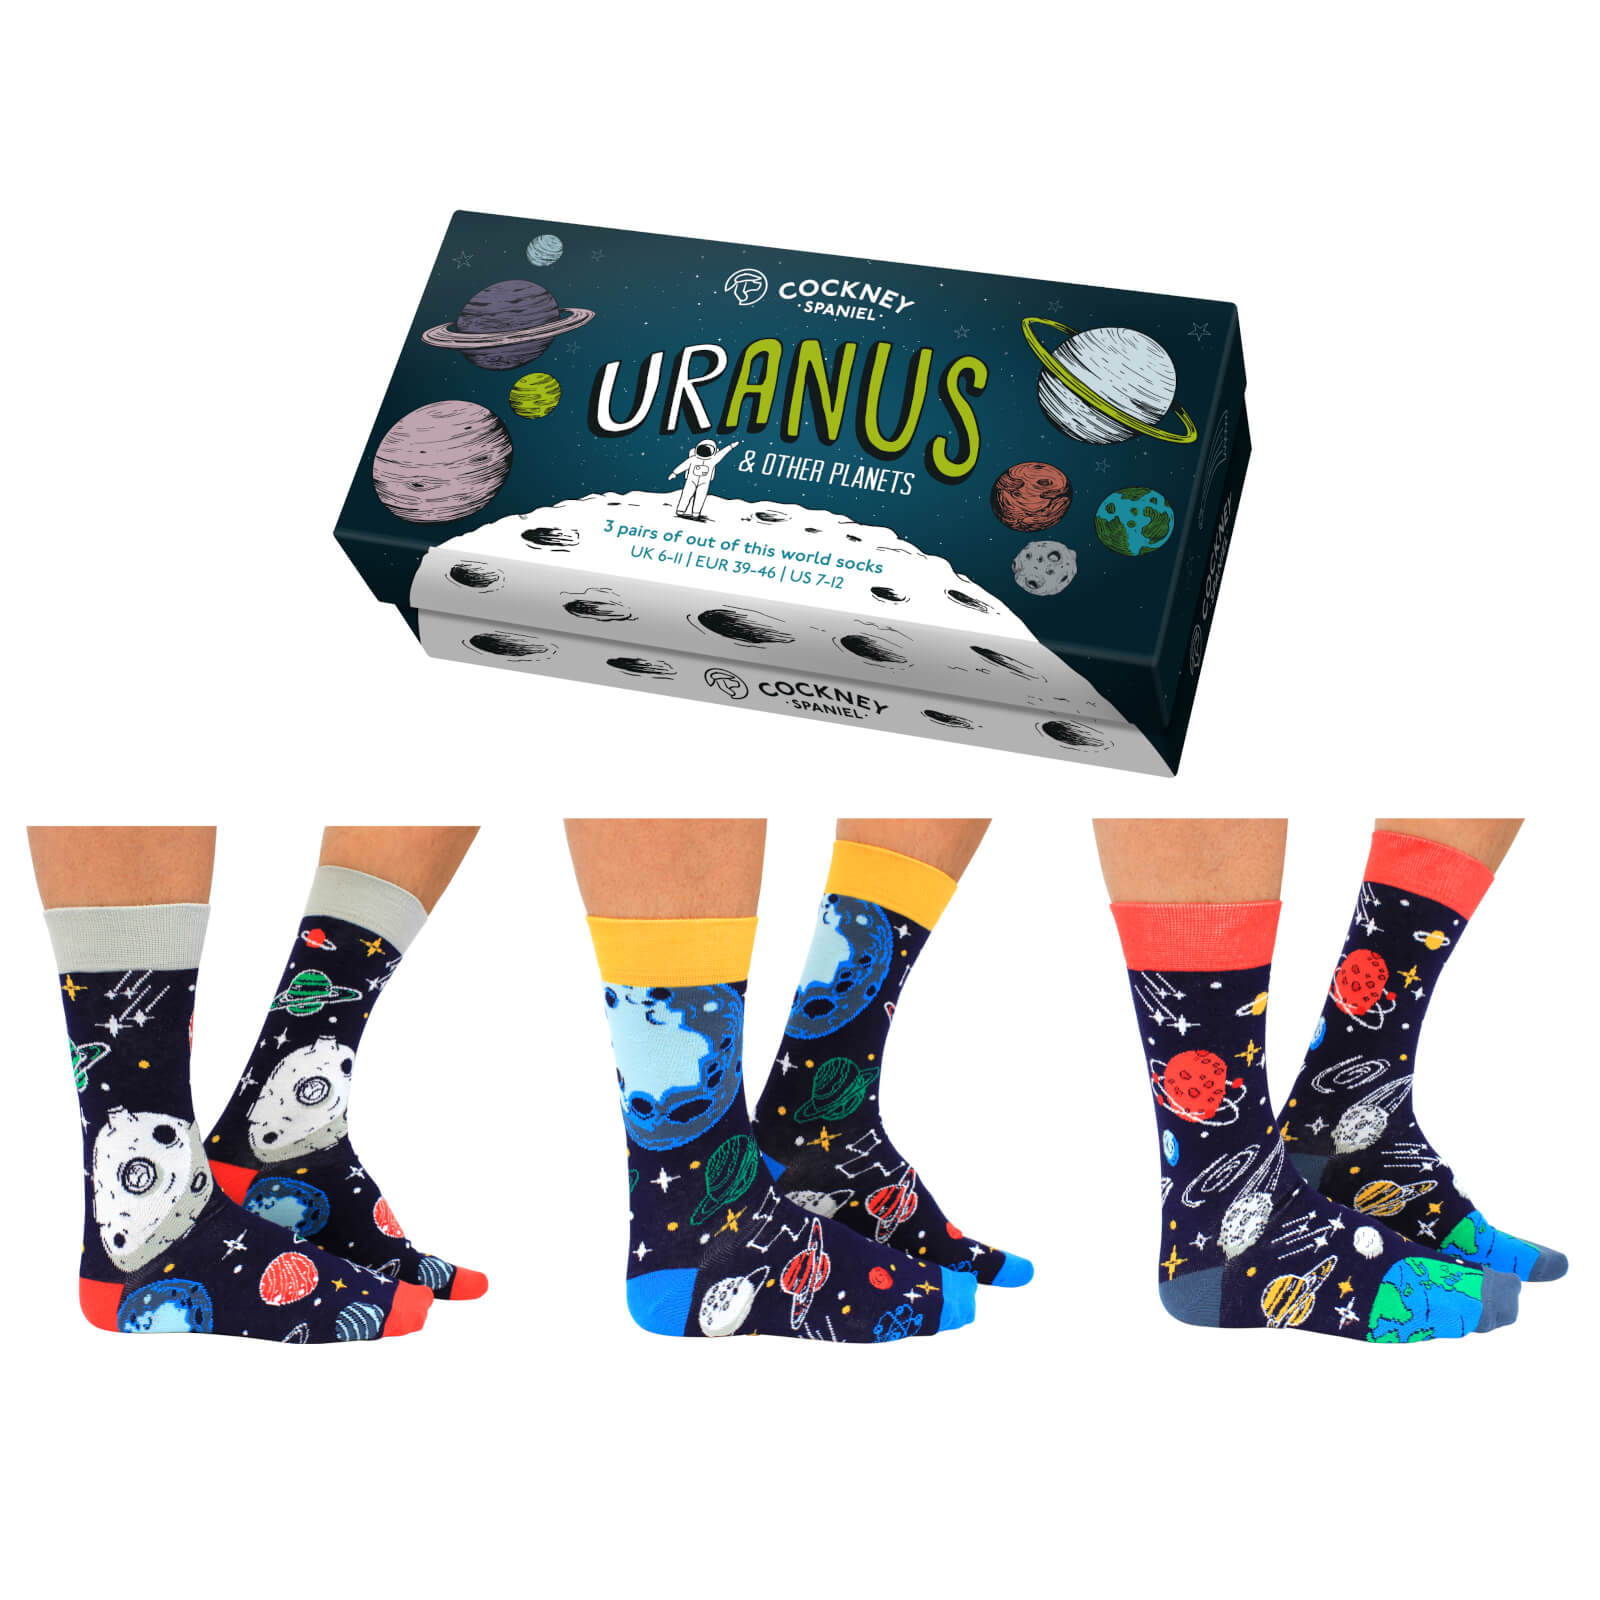 Cockney Spaniel 'Uranus' Sock Gift Set